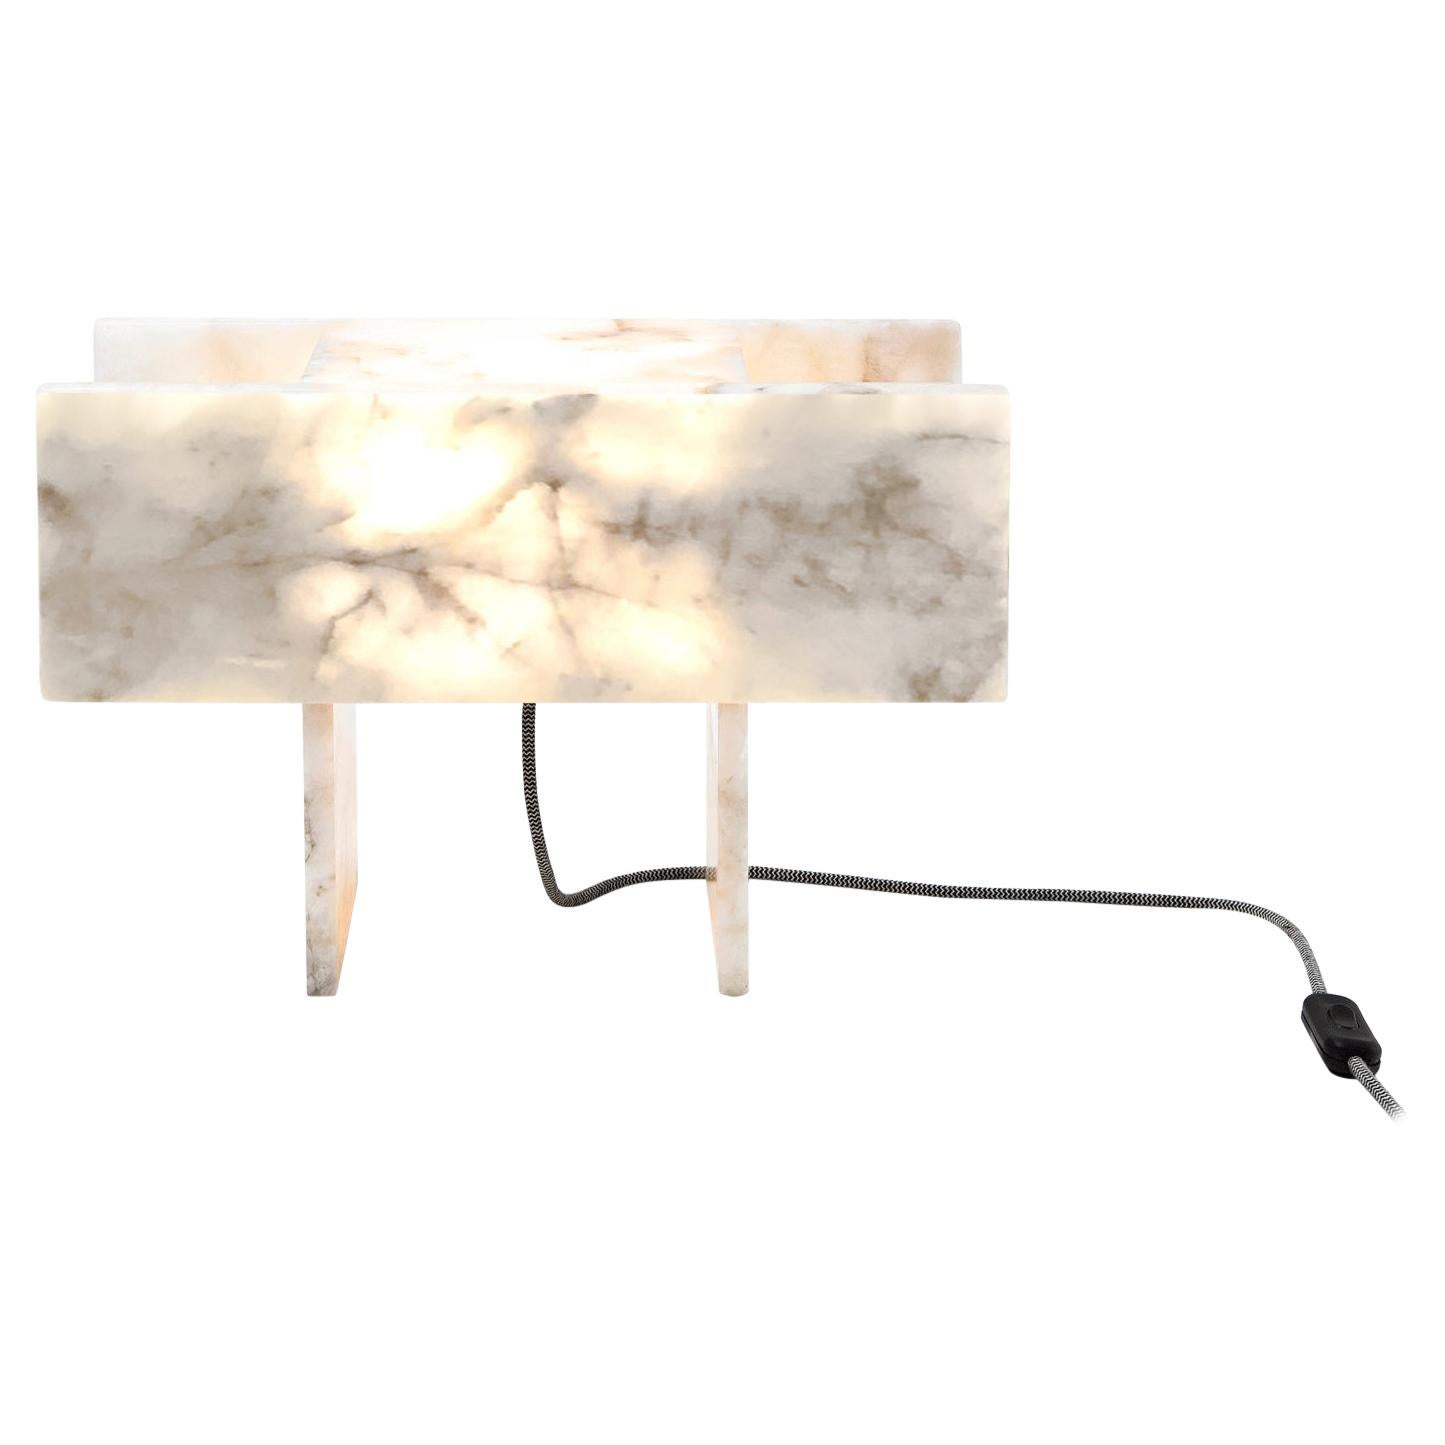 Pedrita Table Lamp, Brazilian Contemporary Design in Brazilian Quartz, Model M For Sale